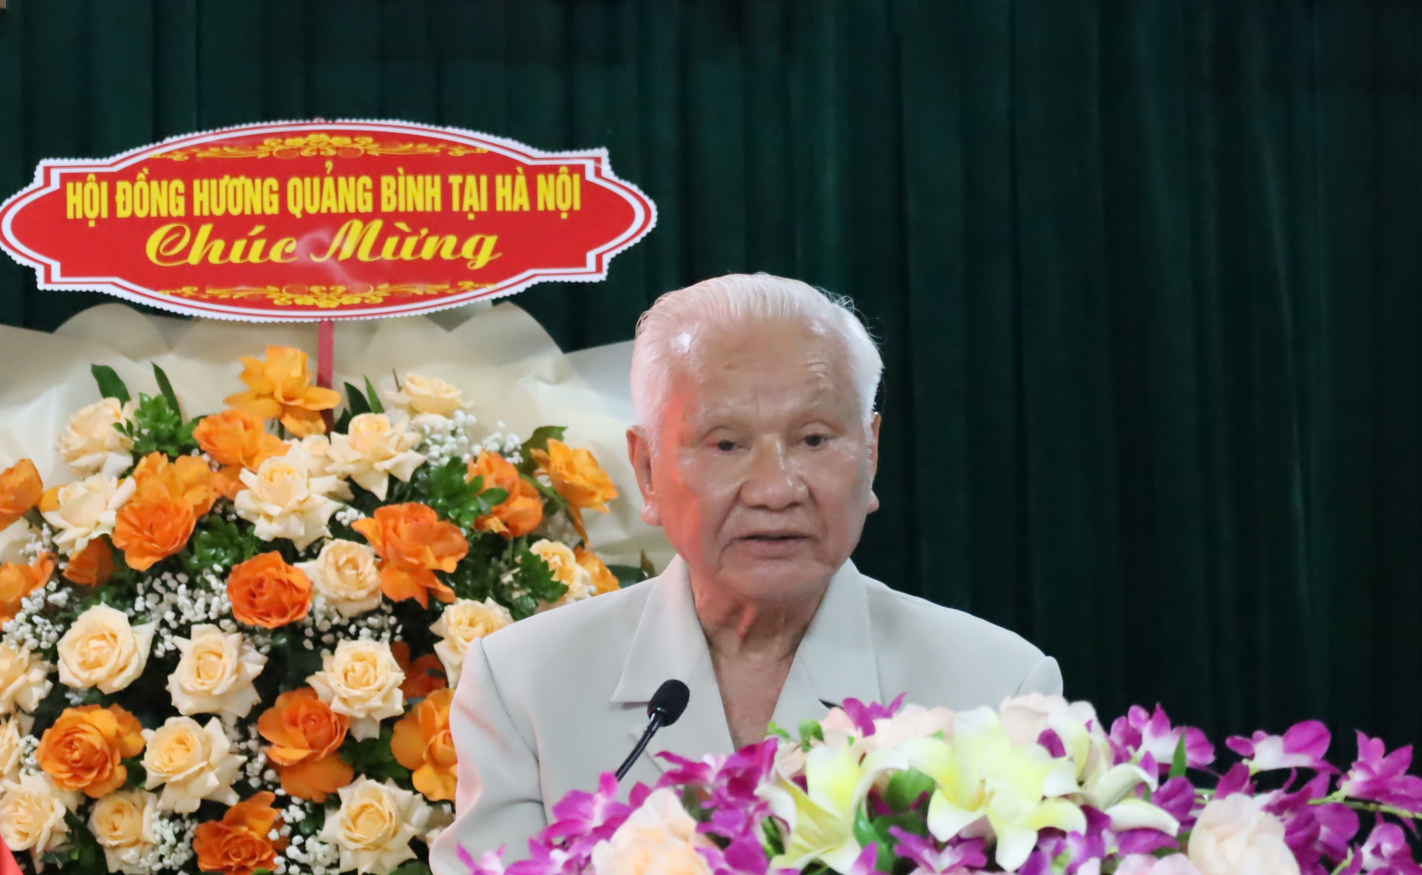 Ông Phạm Quang Lịch, nguyên Chủ tịch Hội BTBBN tỉnh từ năm 2003-2020 chia sẻ cảm xúc.